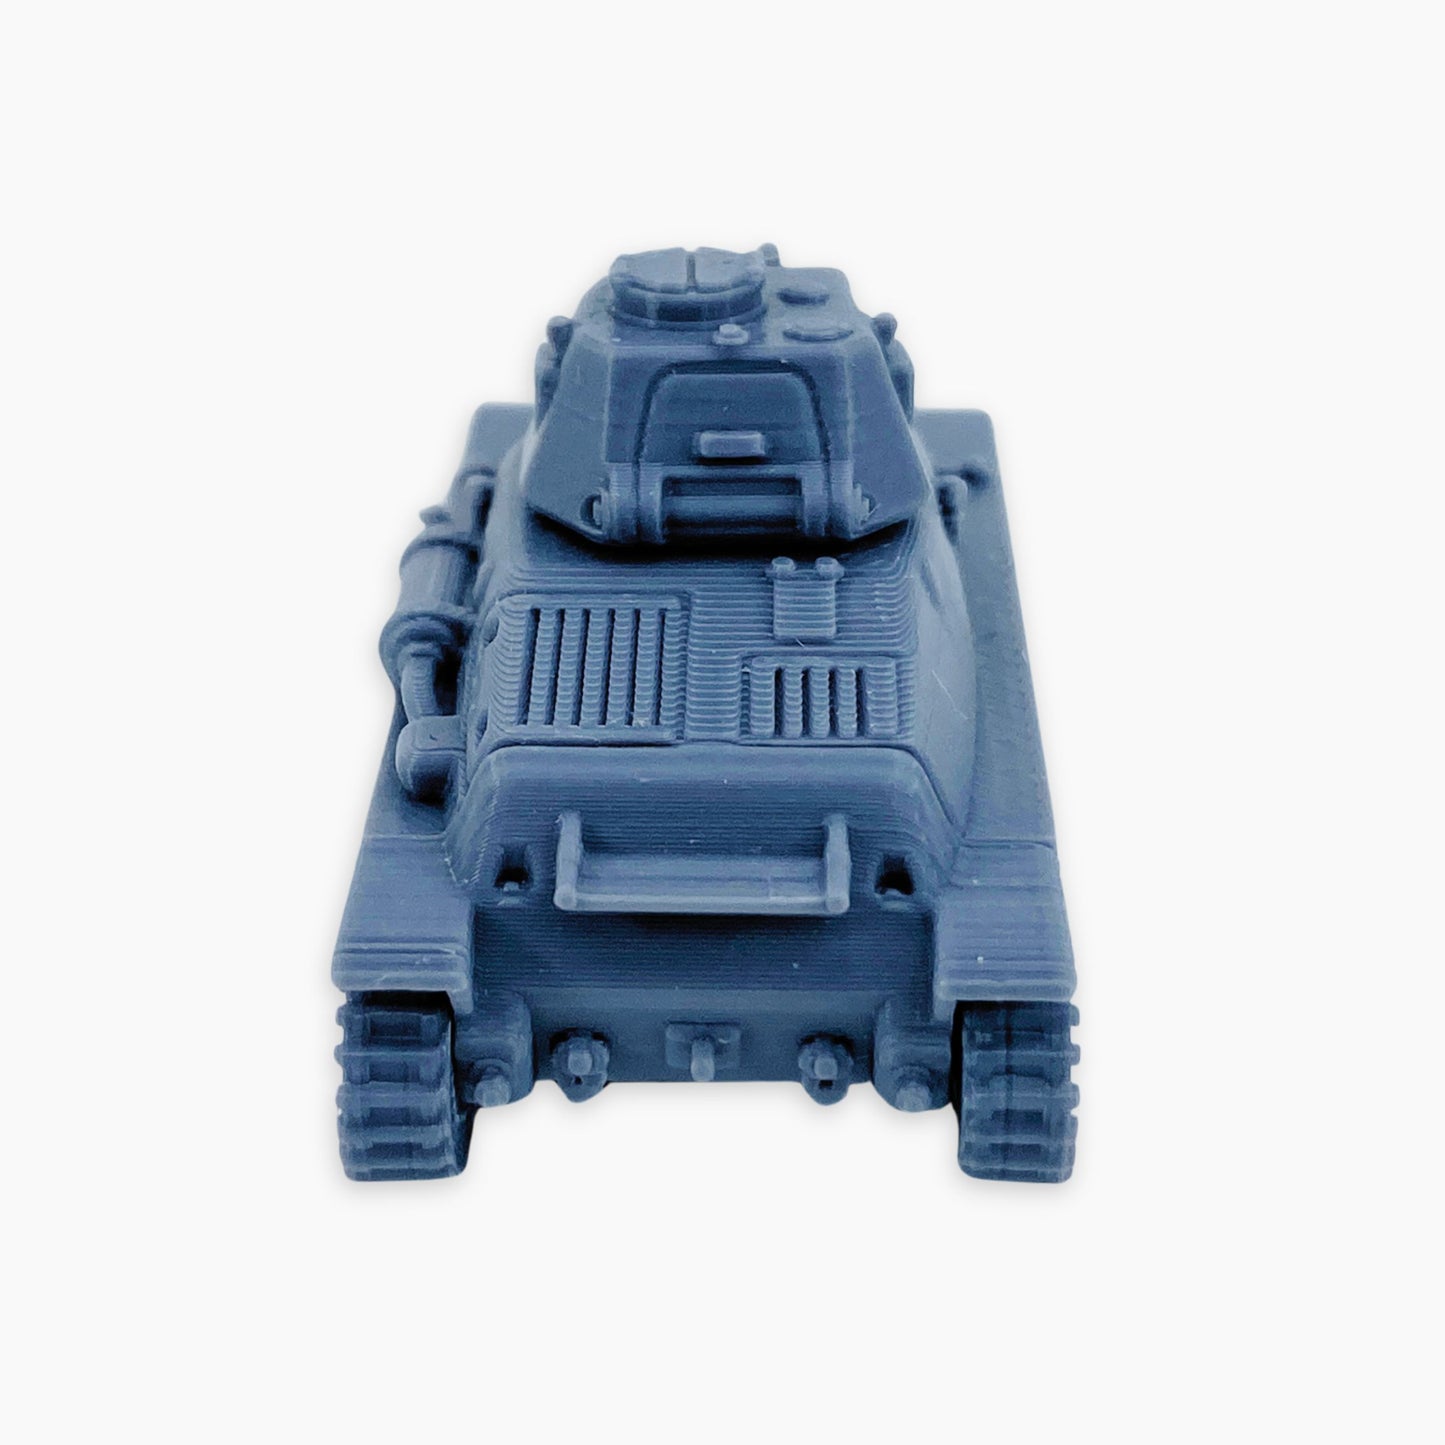 Panzerkampfwagen 35H 734(f)